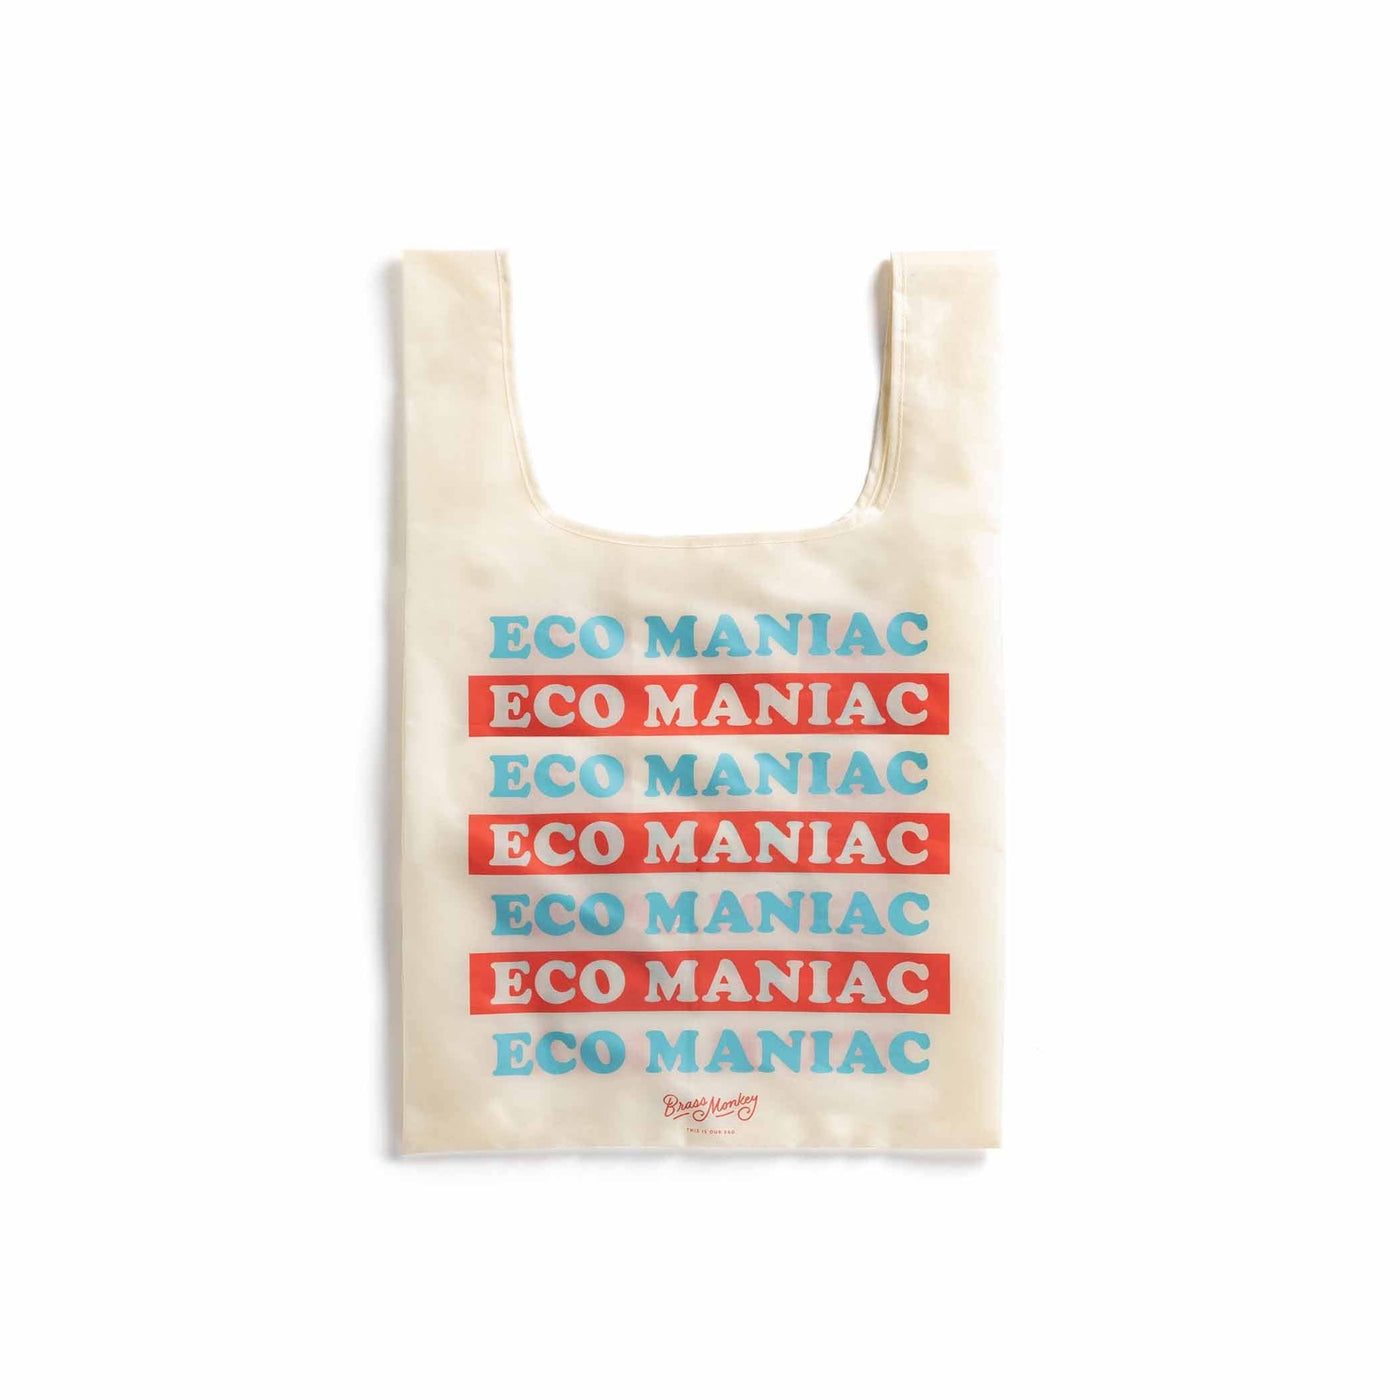 Le tote bag Brass Monkey réinvente le style éco-friendly. En nylon indéchirable, il résiste à toutes vos courses tout en affichant fièrement l'illustration 'Eco Maniac'. Un choix chic et responsable.